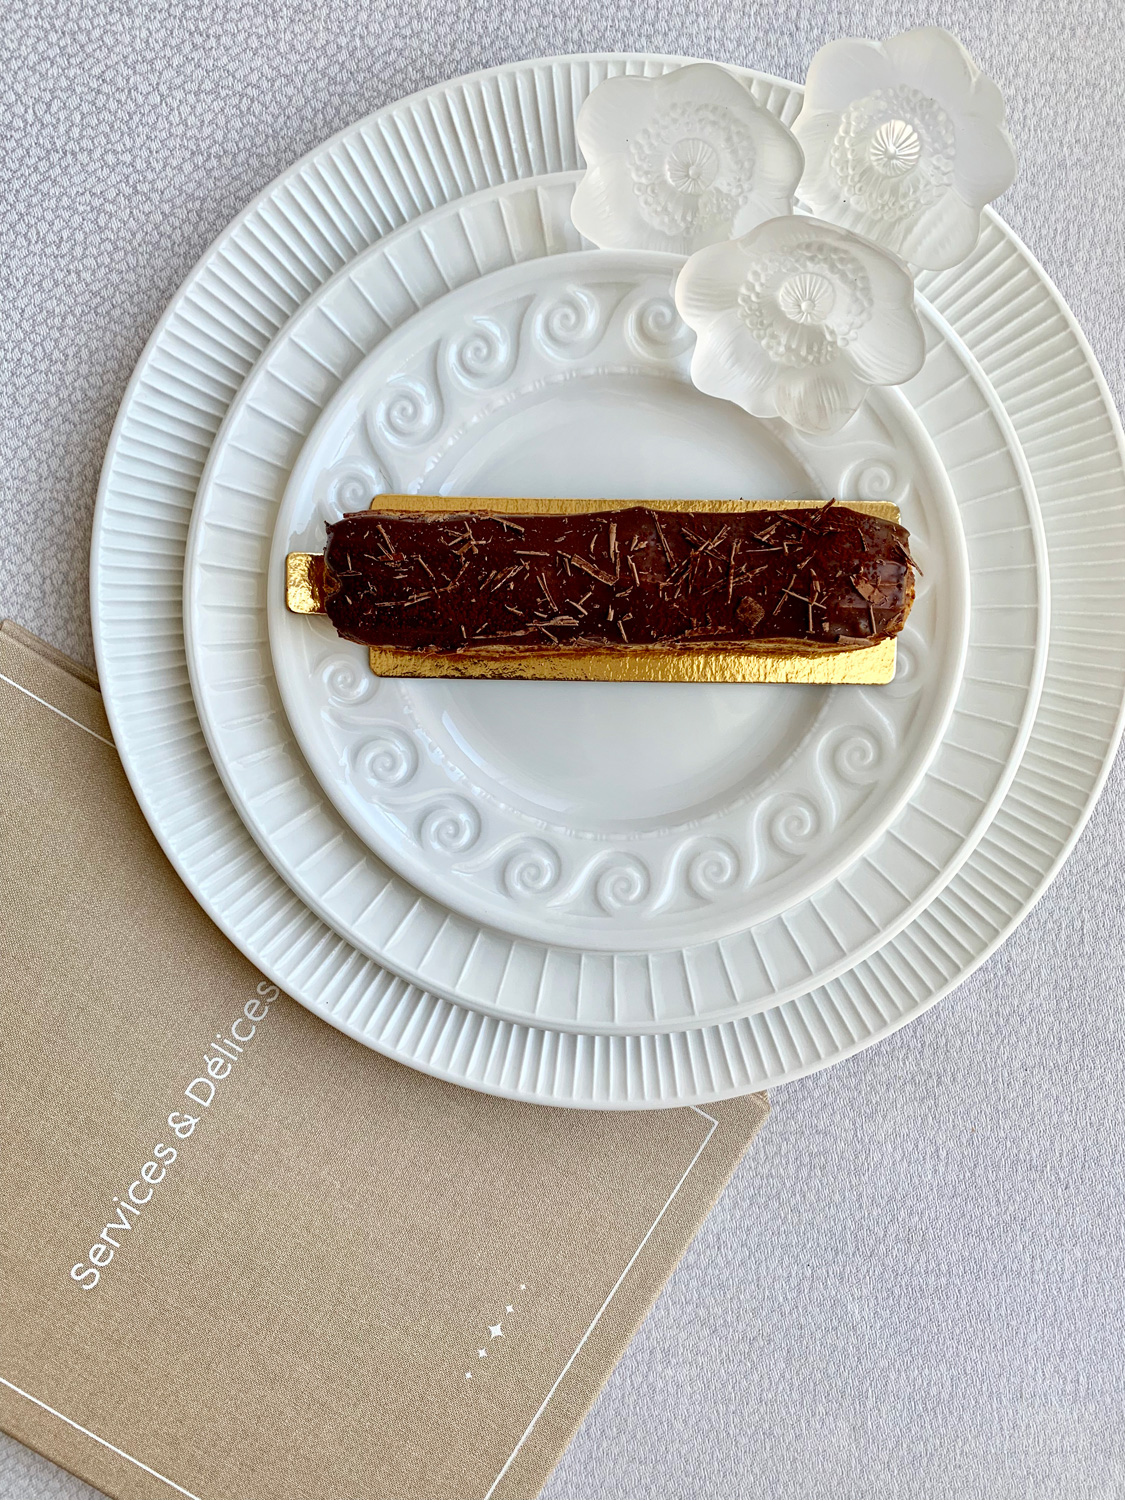 Шоколадный эклер. Сет из тарелок Louvre, Bernardaud. Декоративные фигурки Anemone, Lalique